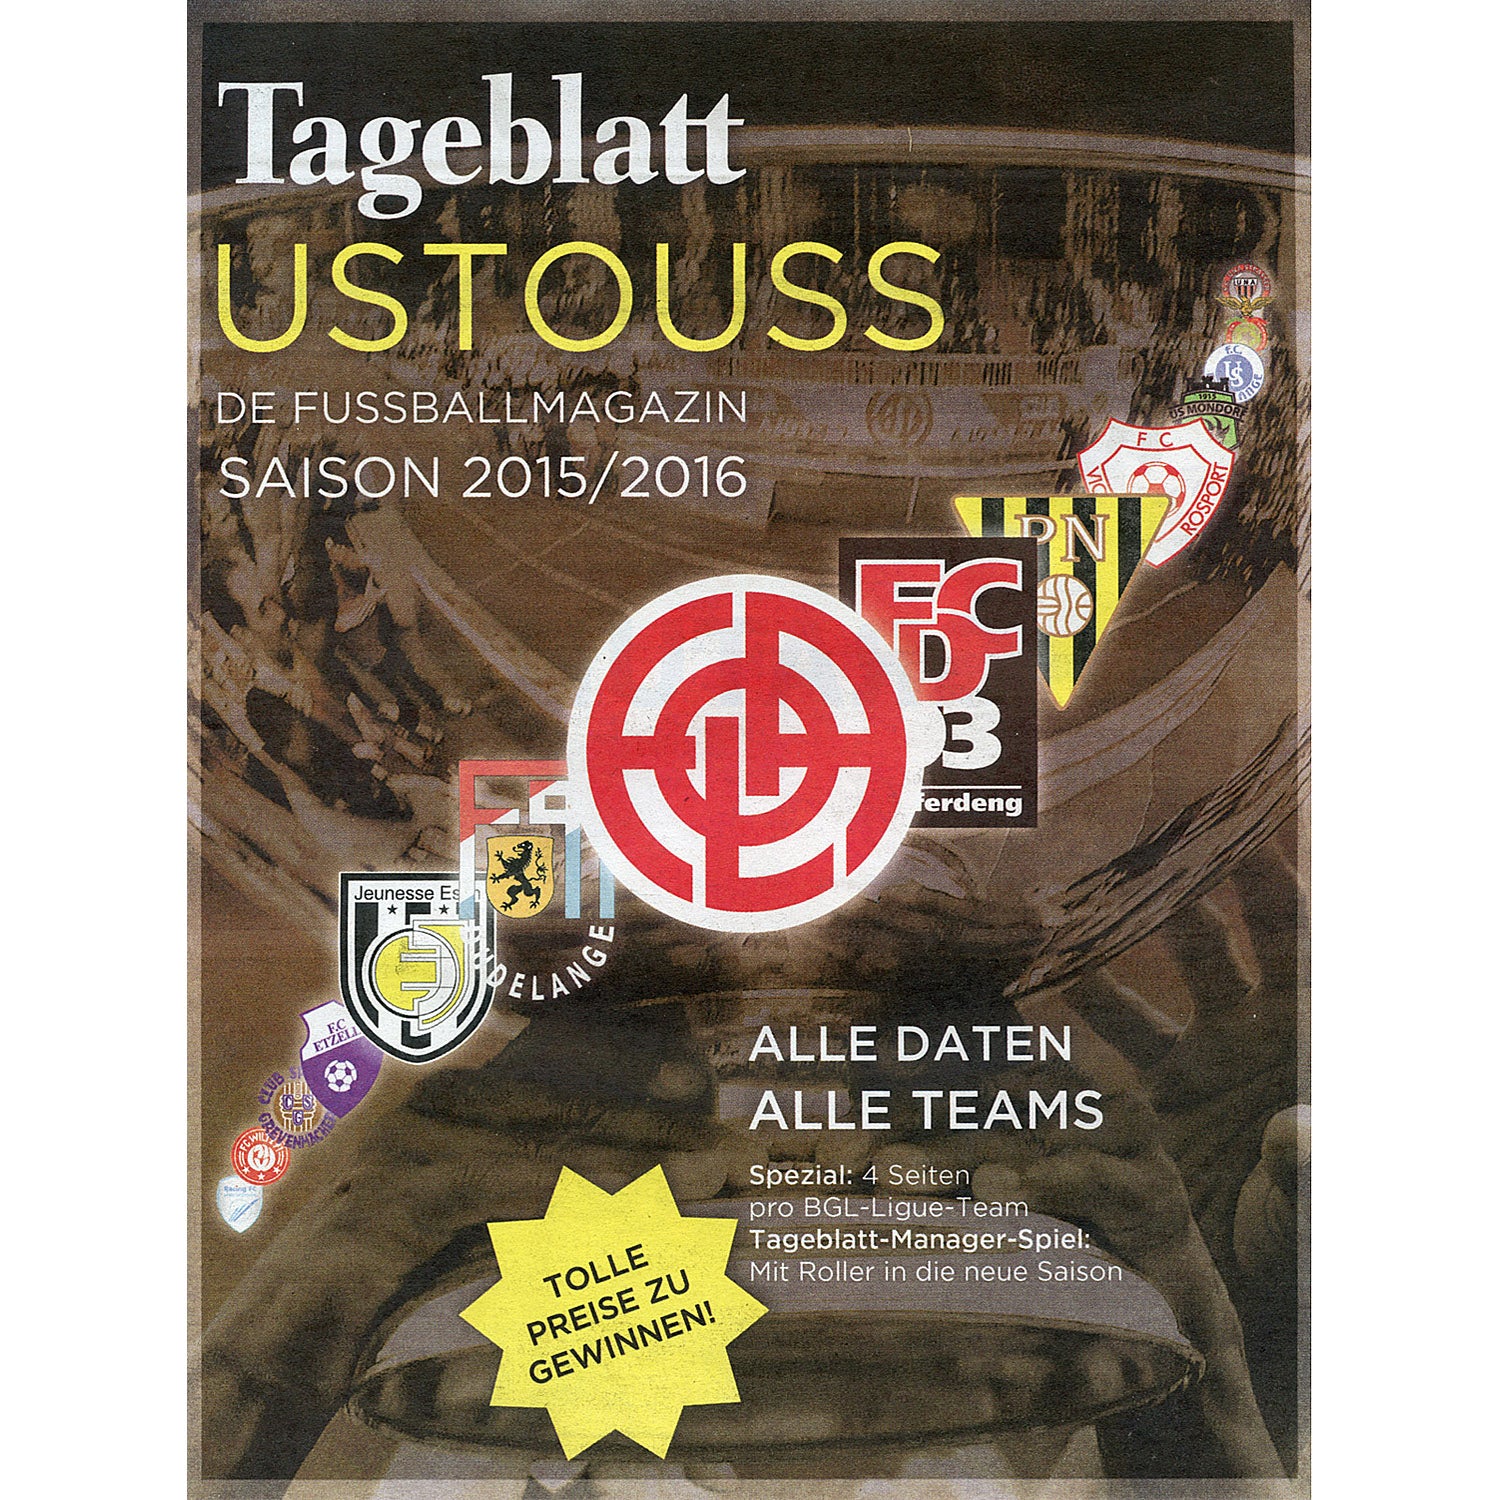 Tageblatt Ustouss de Fussballmagazin Saison 2015/2016 (Luxembourg Season Preview)